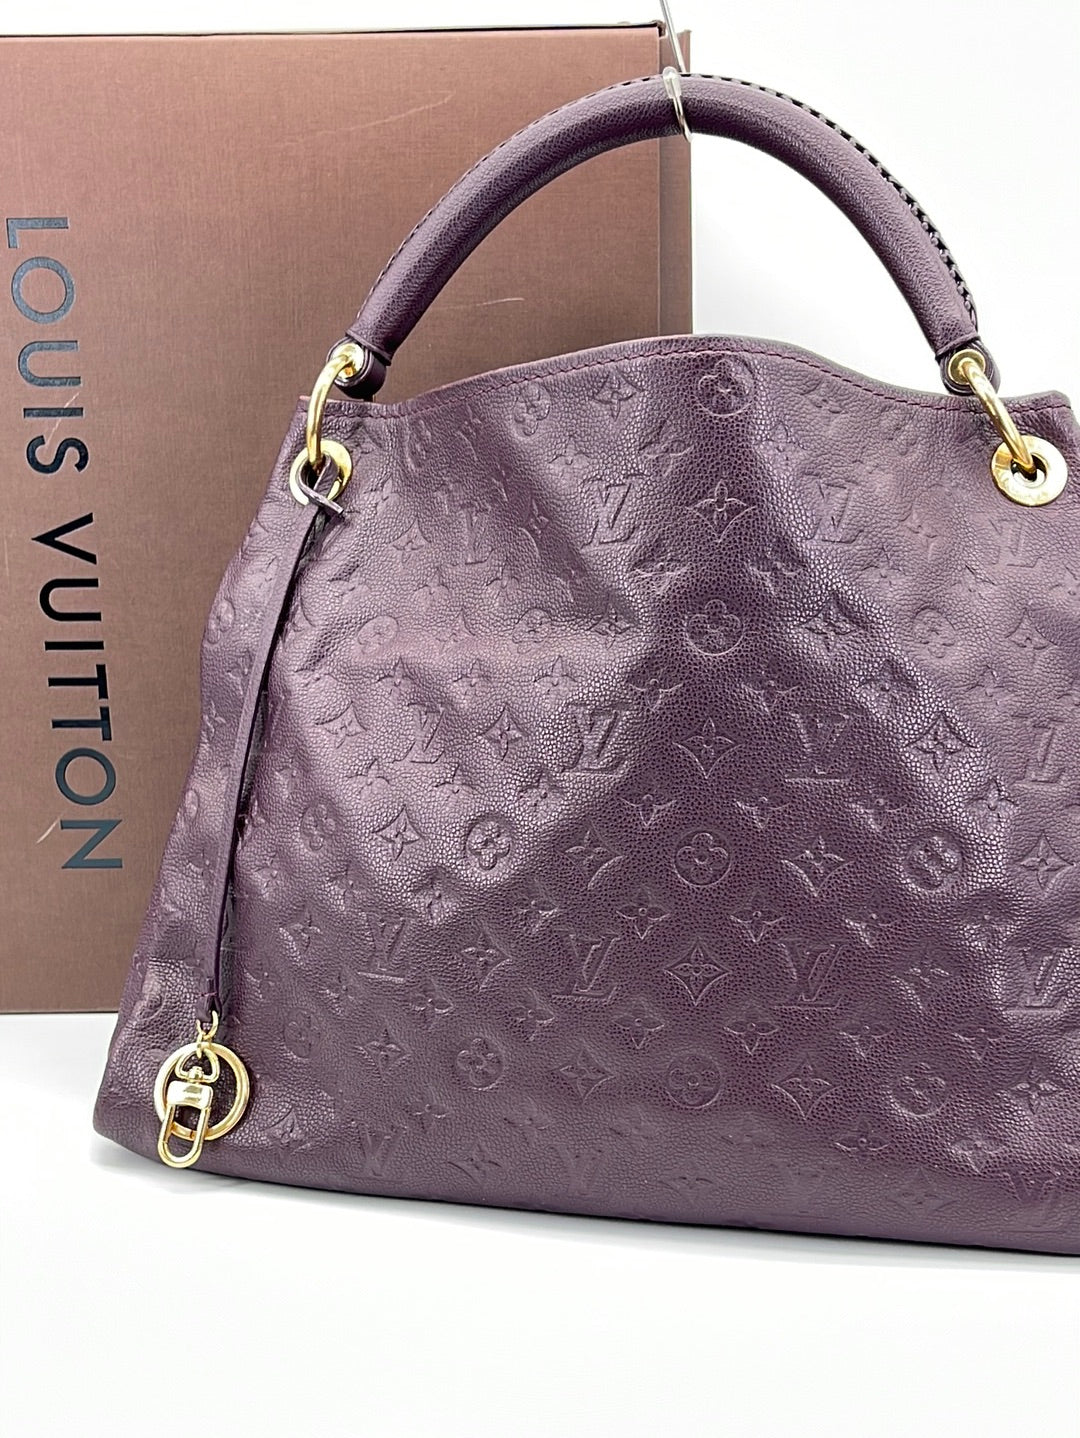 louis vuitton handbag purple